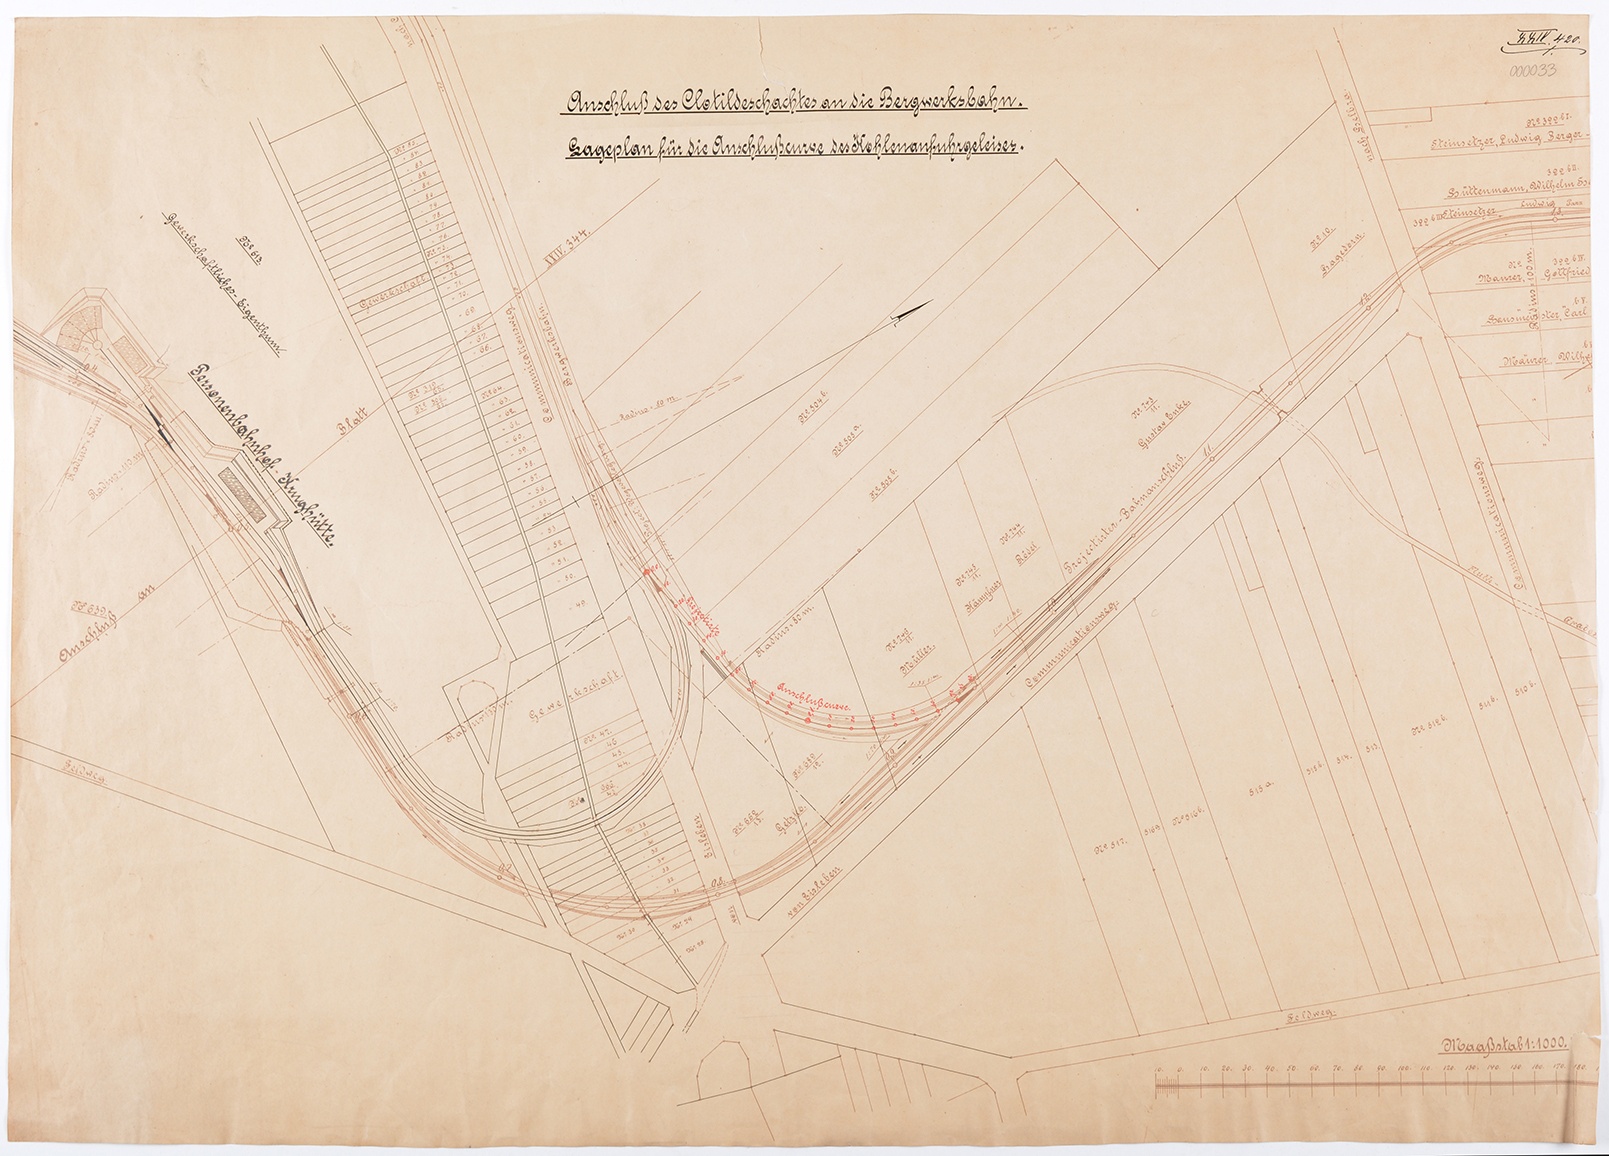 Anschluß des Clotildeschachtes an die Bergwerksbahn. Lageplan für die Anschlußcurve des Kohleanfuhrgleises (Mansfeld-Museum im Humboldt-Schloss CC BY-NC-SA)